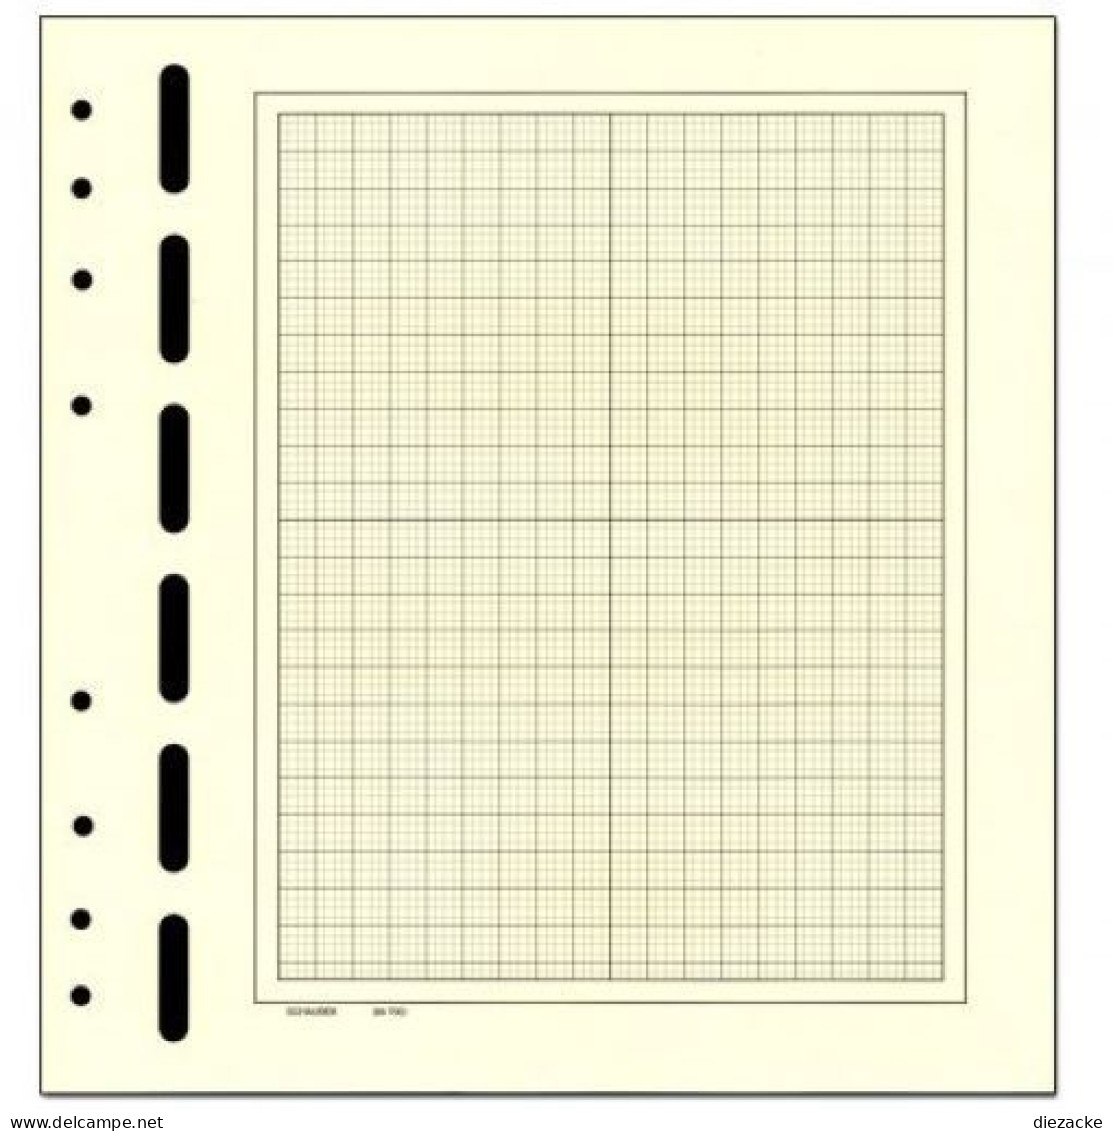 Schaubek Blankoblätter Bb710 Gelblich-weiß Mit Schwarzem Netzdruck 50 Blatt Neu ( - Blankoblätter